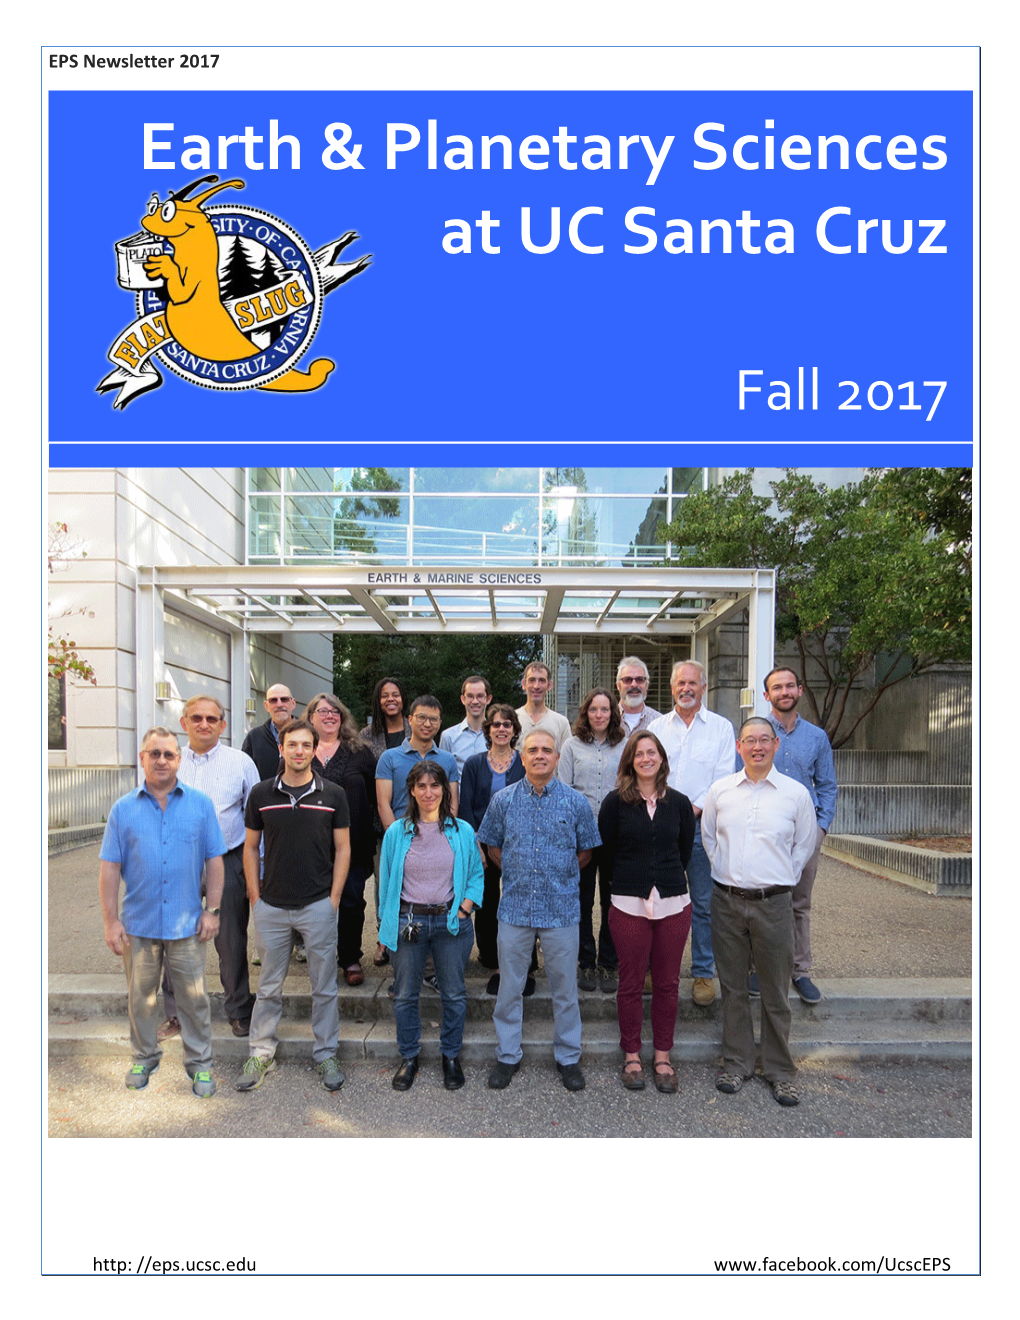 2017 Earth & Planetary Sciences at UC Santa Cruz